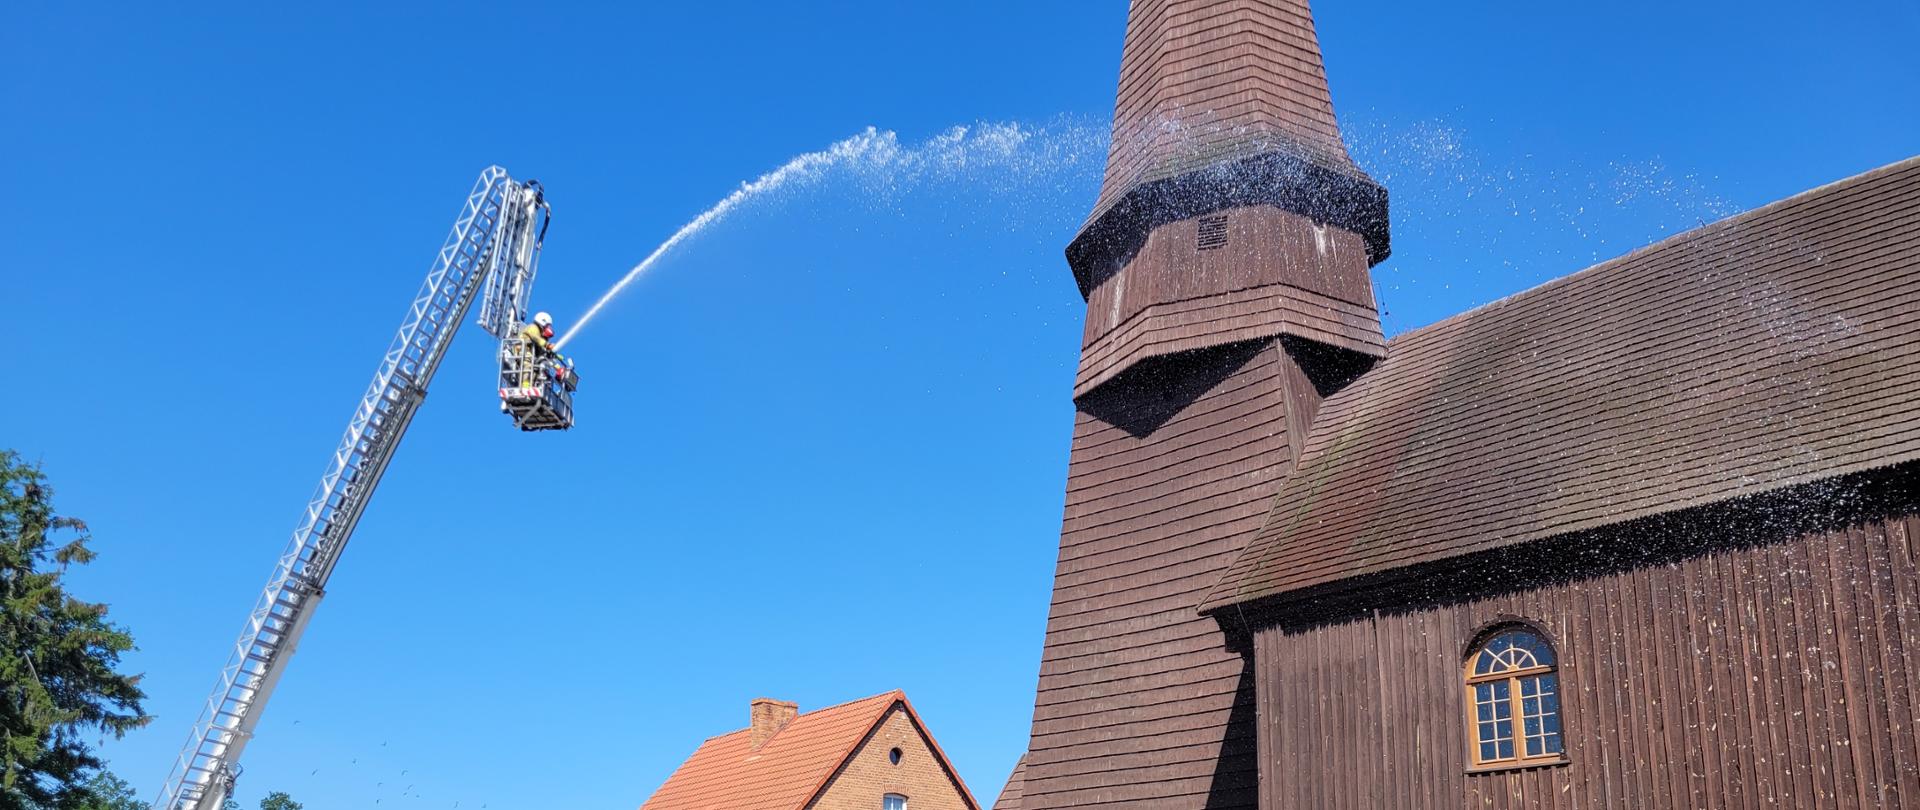 Słoneczna pogoda, podnośnik strażacki na betonowym podłożu, w oddali drewniany zabytkowy kościół. Z podnośnika podawana jest woda na dach kościoła na tle błękitnego nieba.